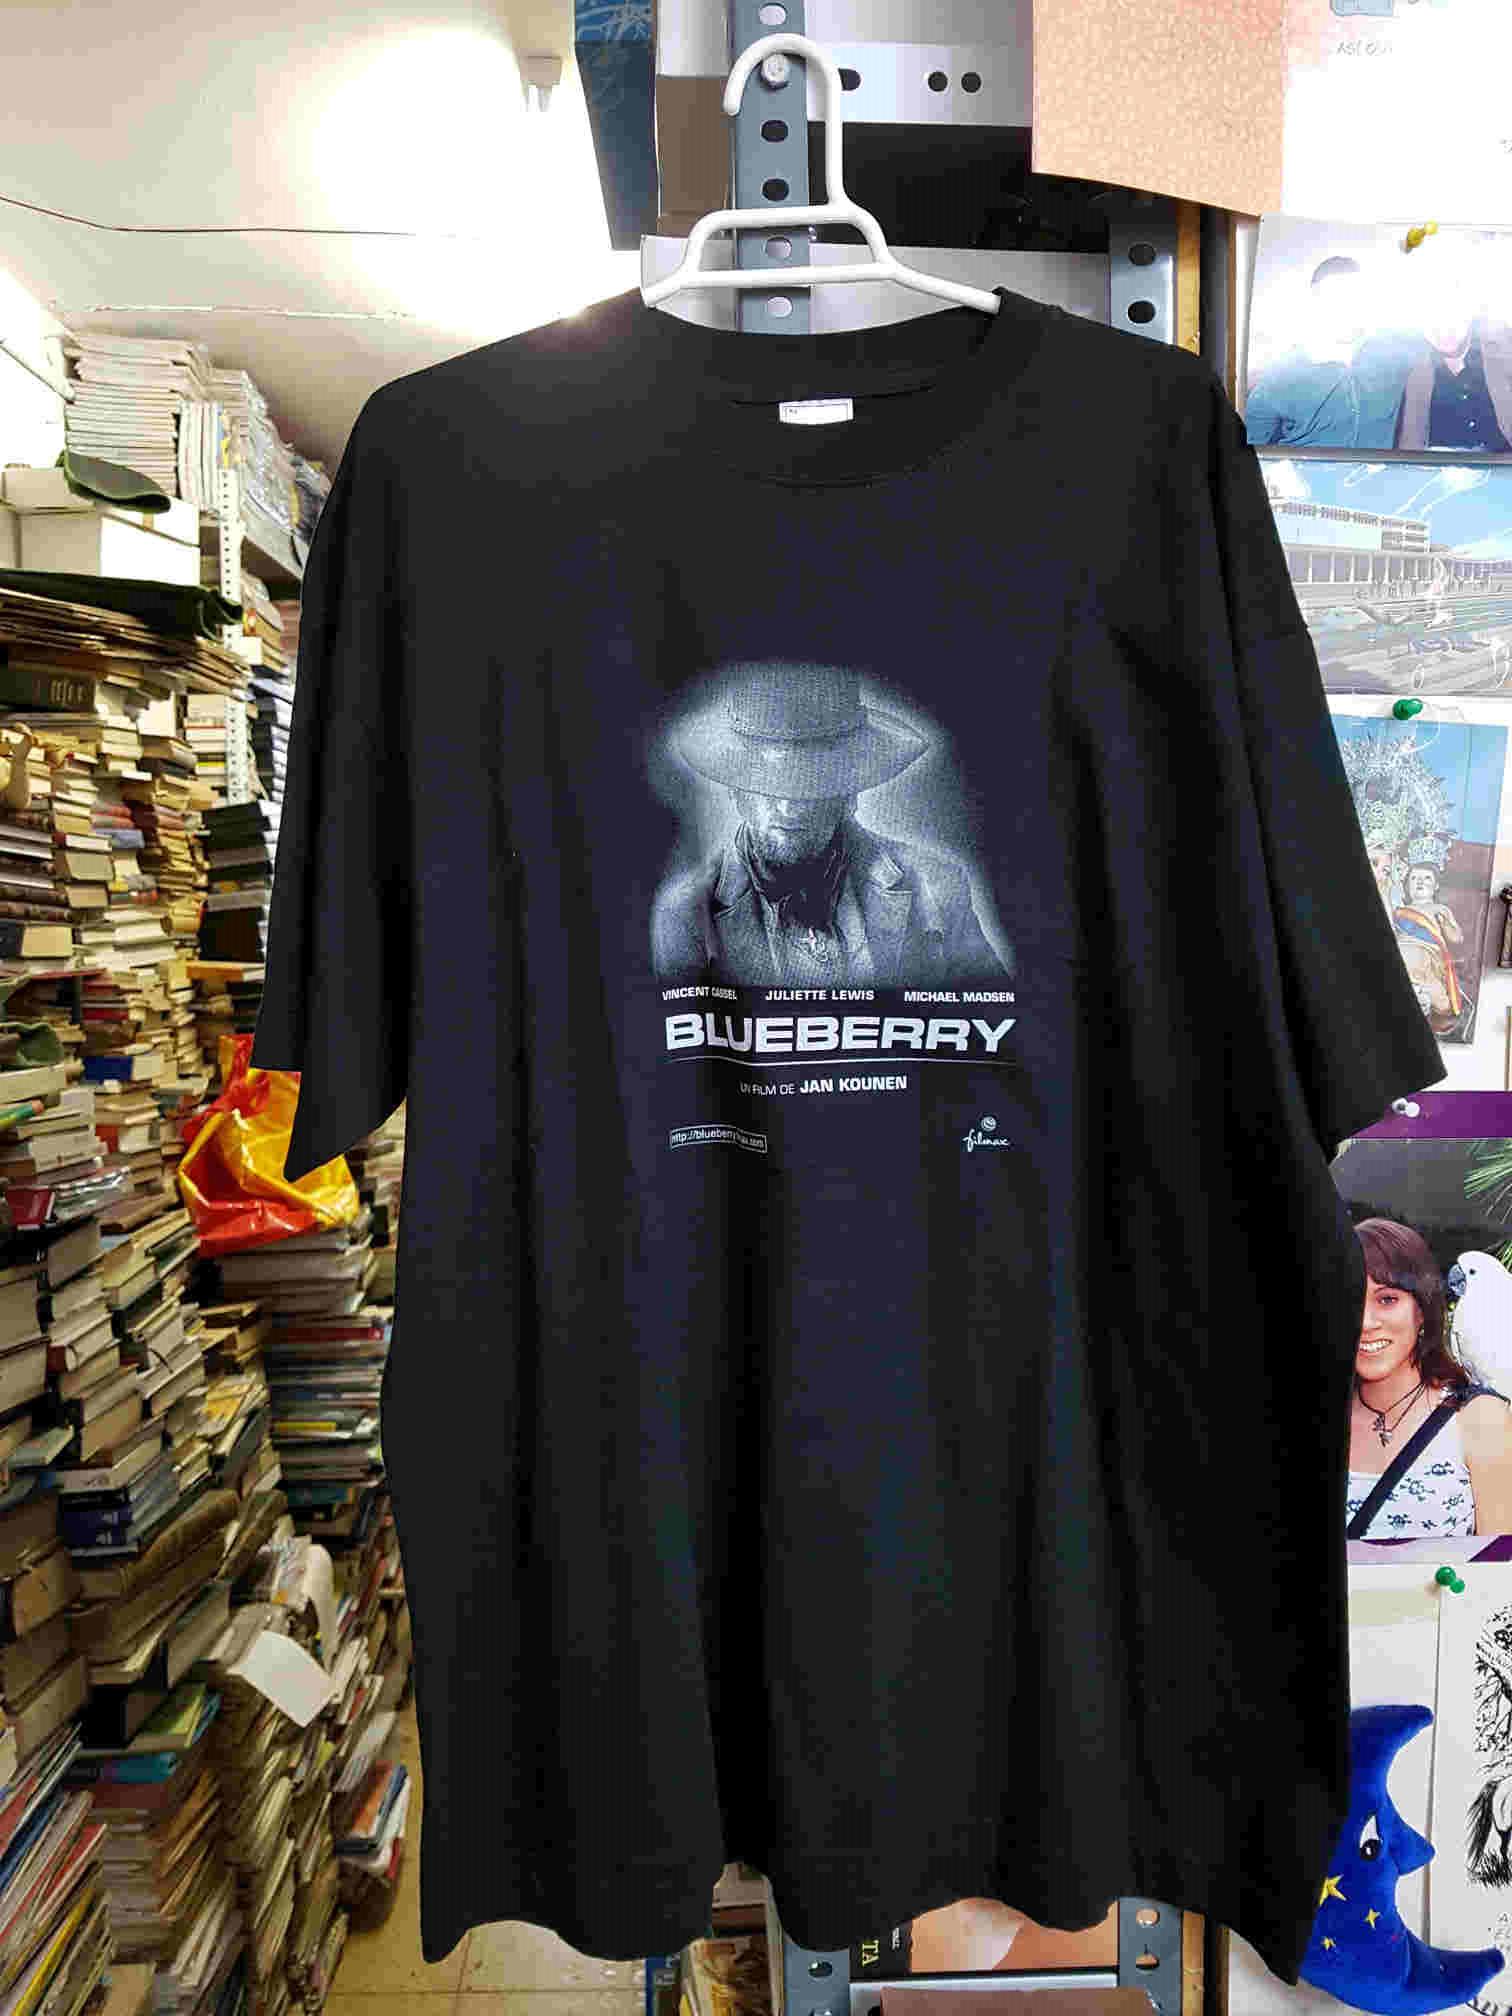 Camiseta negra de Blueberry, film de Jan Kounen. Talla XL